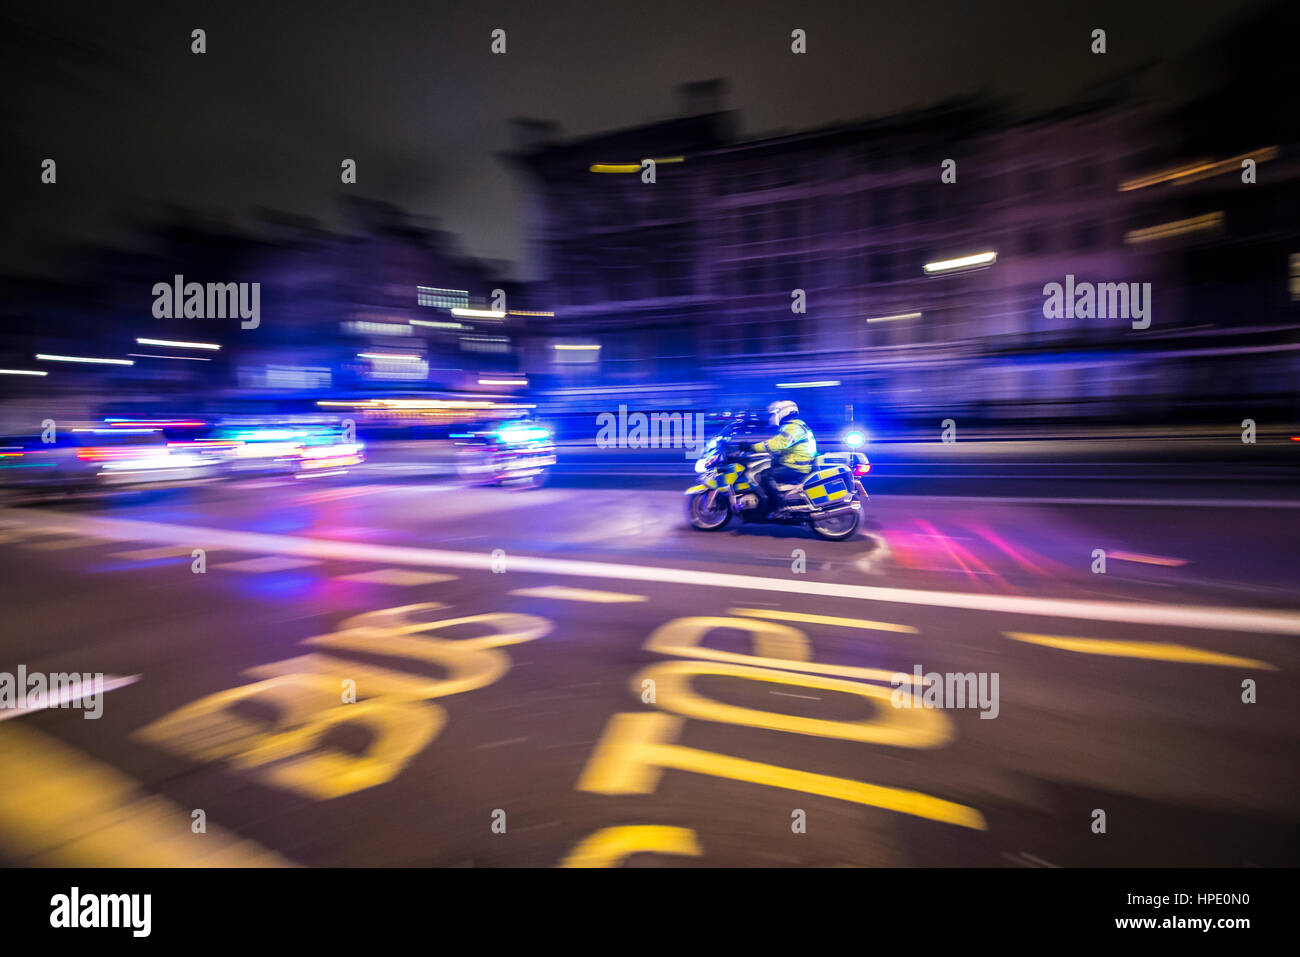 Feuerwehr und Polizei-Auto mit Blaulicht und die LED blinkt anzeigen  Unfall, Deutsch für Unfall, an einer Unfallstelle Stockfotografie -  Alamy